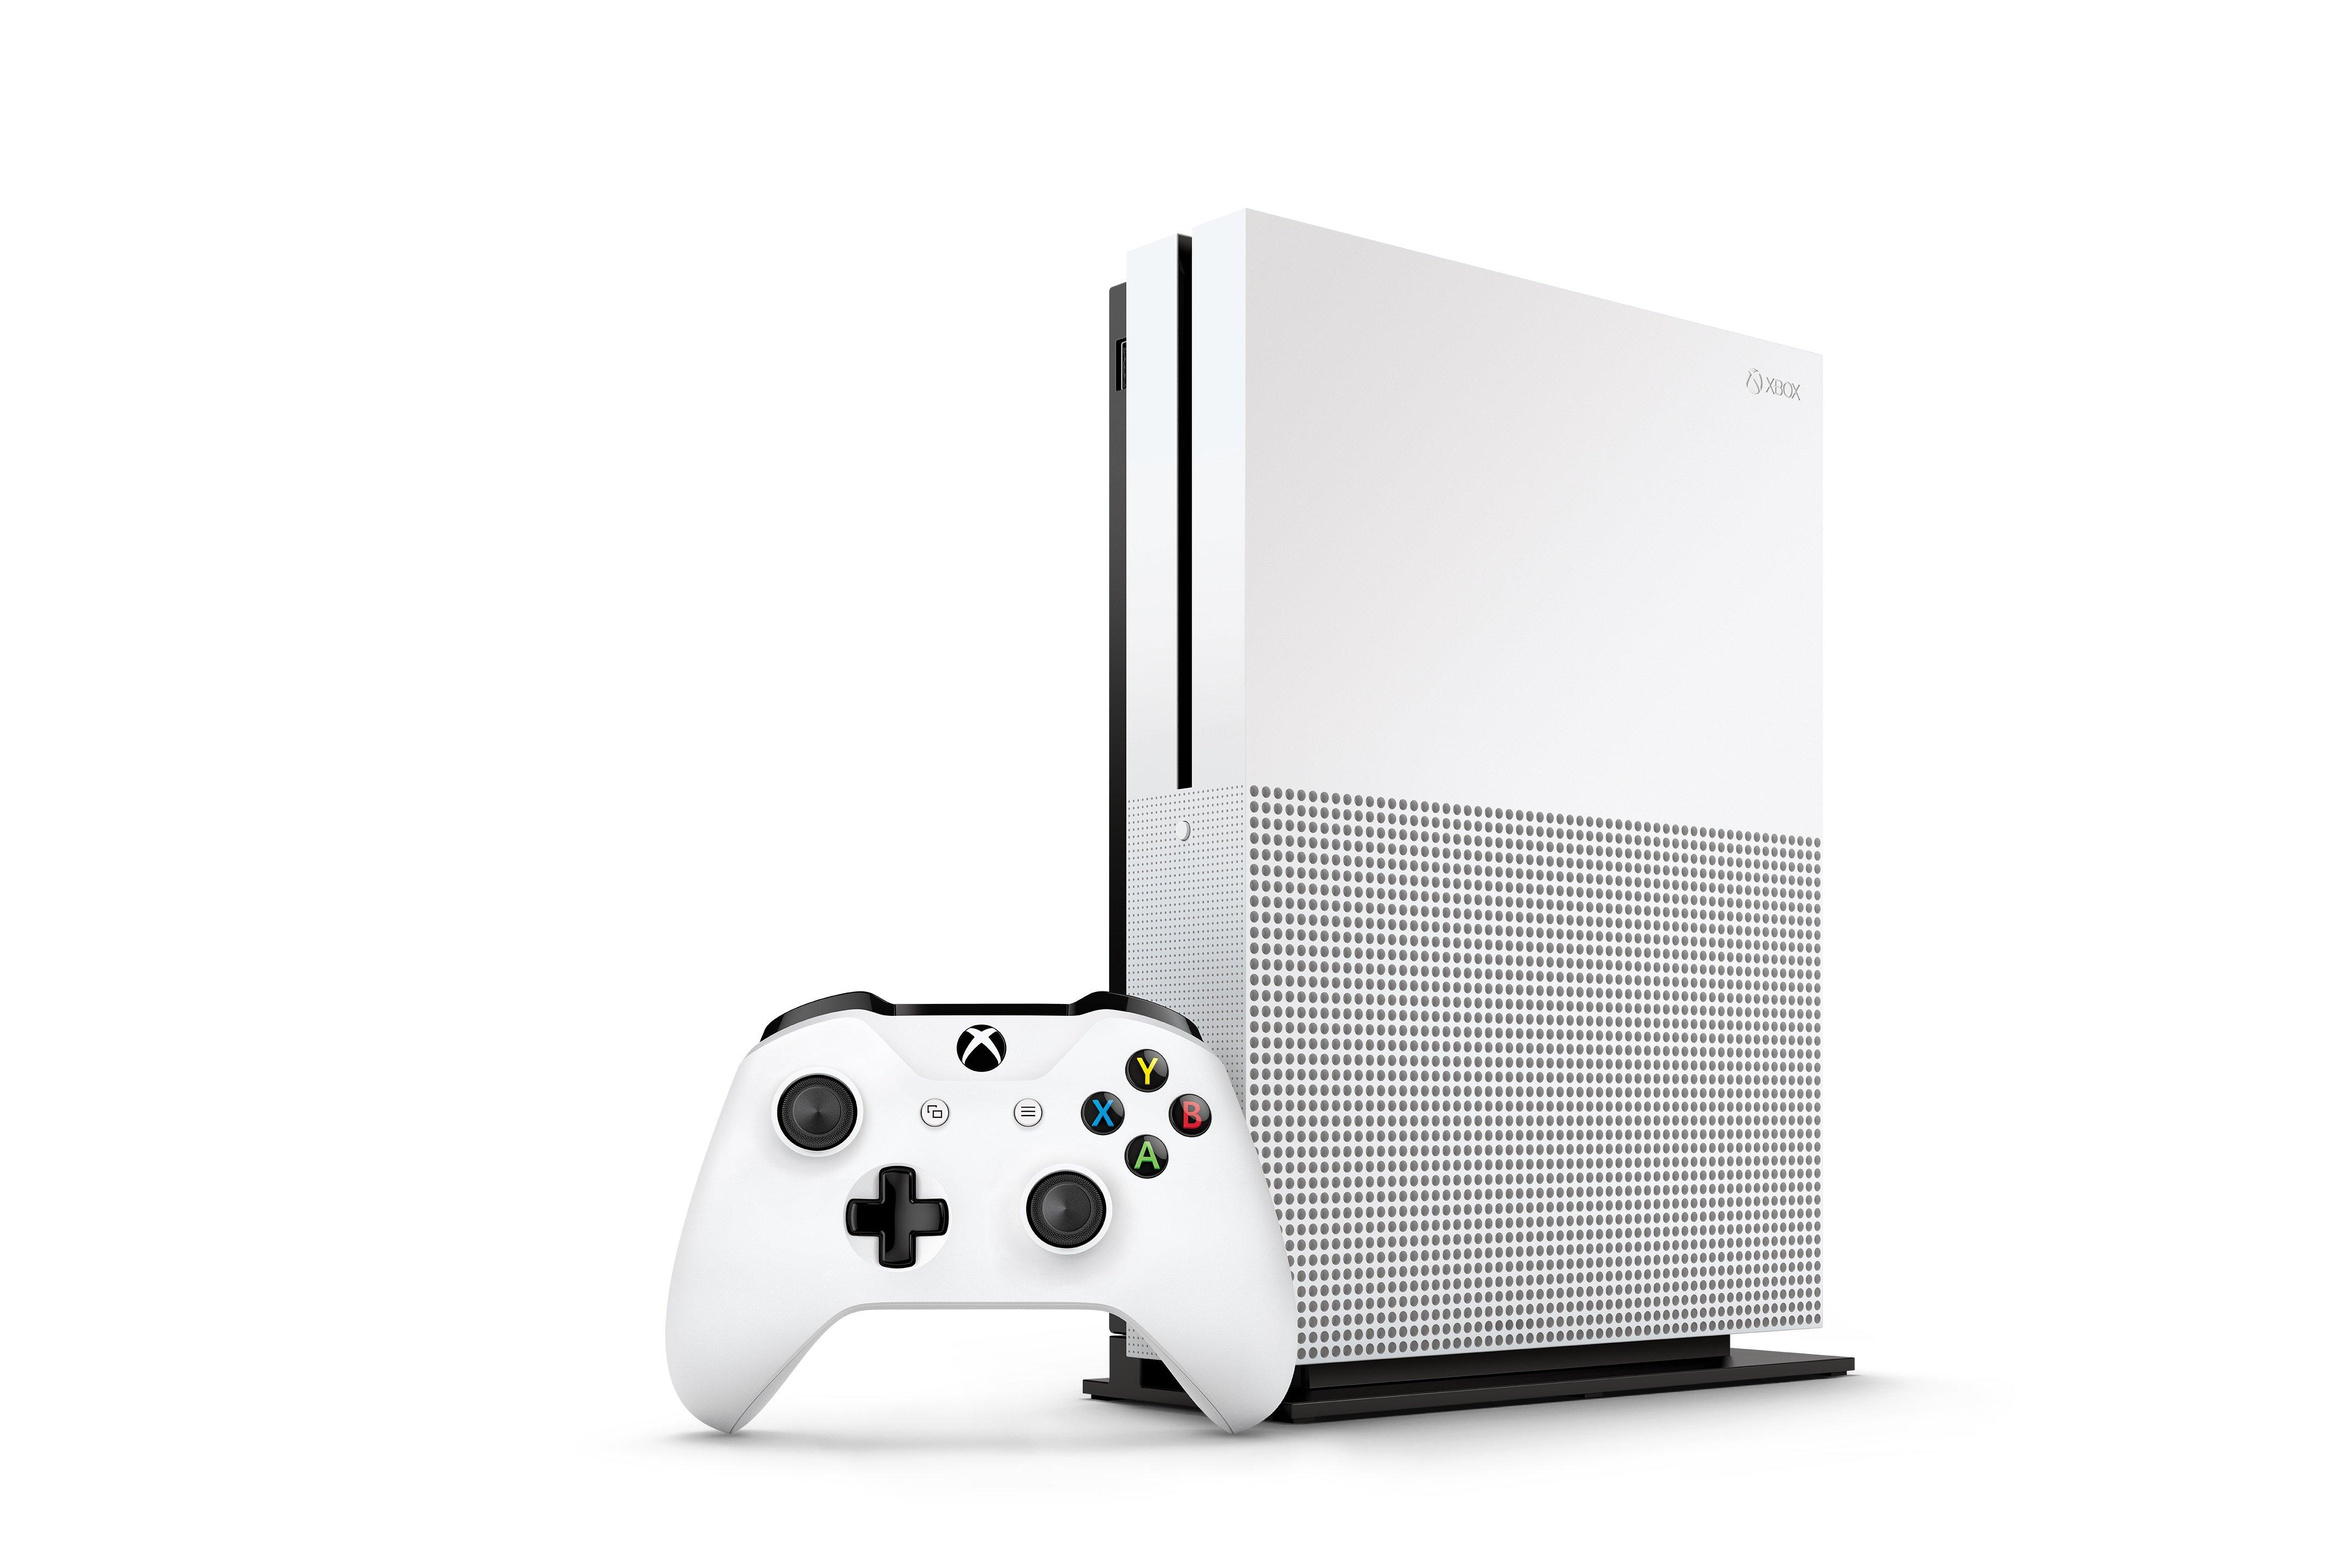 Microsoft Xbox One S 500GB Console White